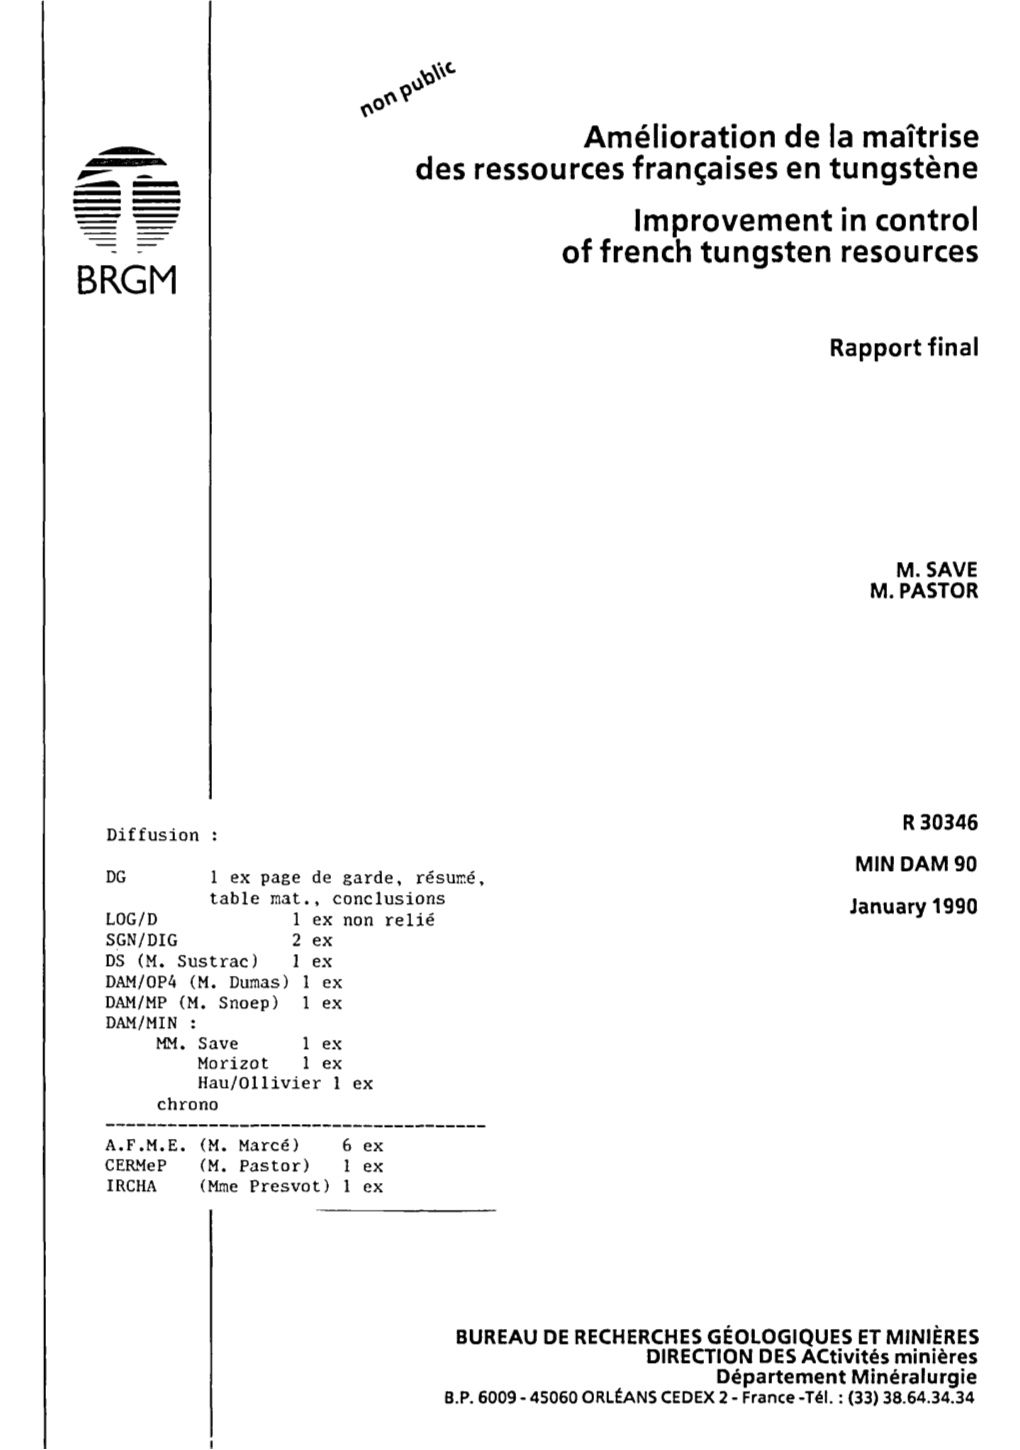 Amélioration De La Maîtrise Des Ressources Françaises En Tungstène Improvement in Control of French Tungsten Resources BRGM